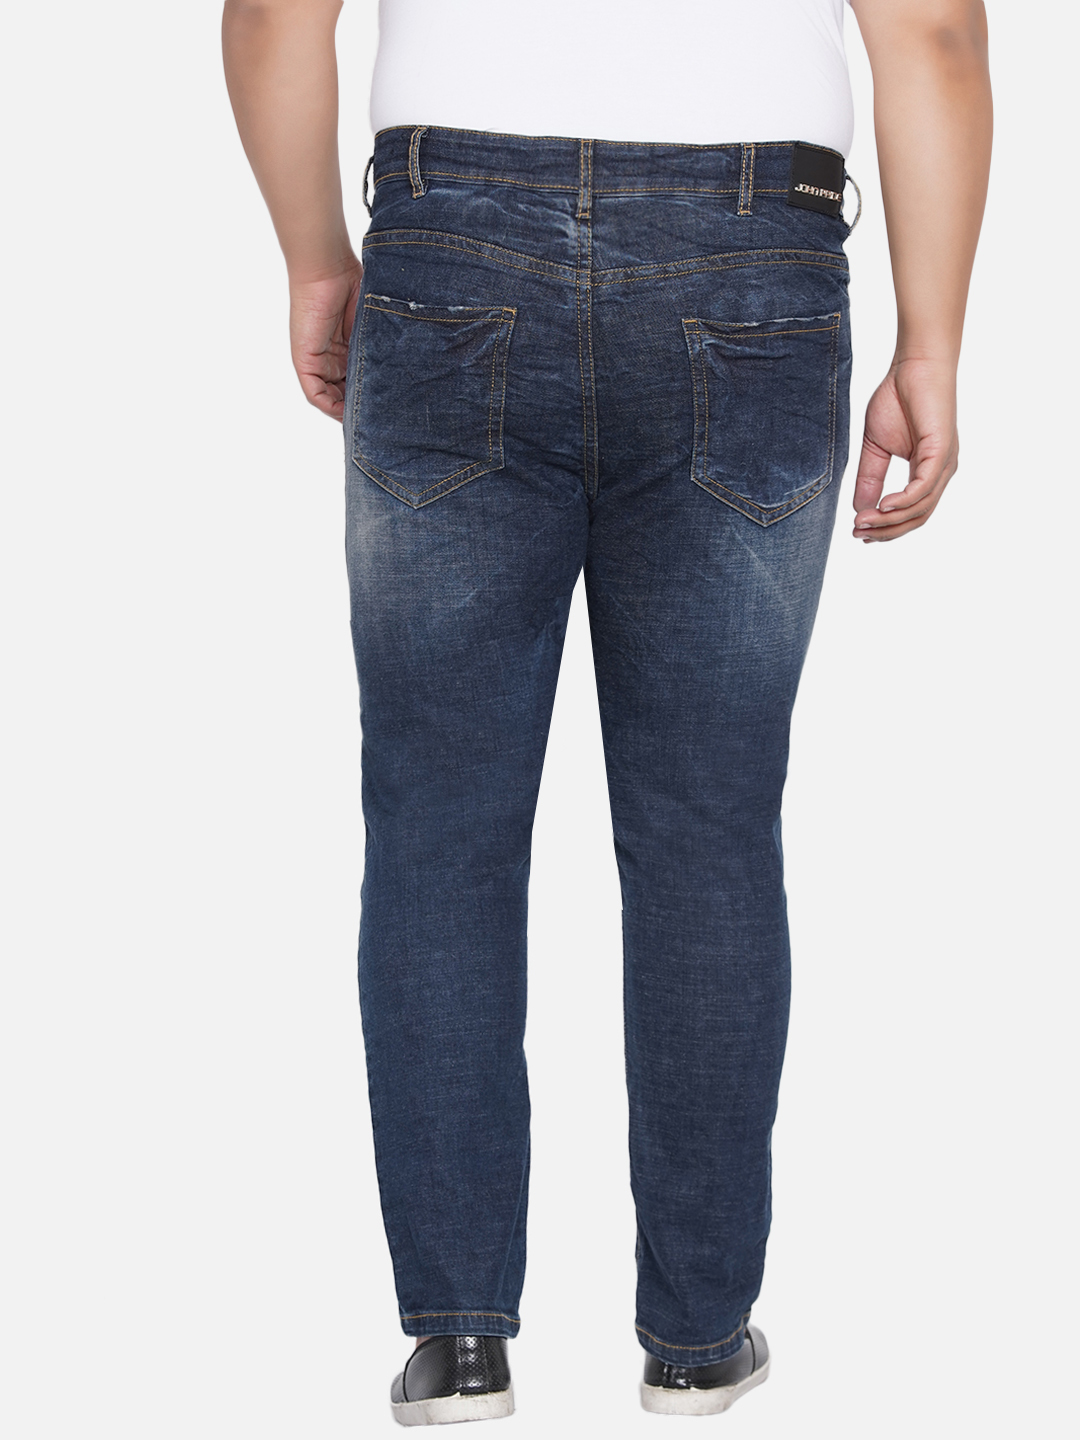 bottomwear/jeans/PJPJ6045/pjpj6045-5.jpg